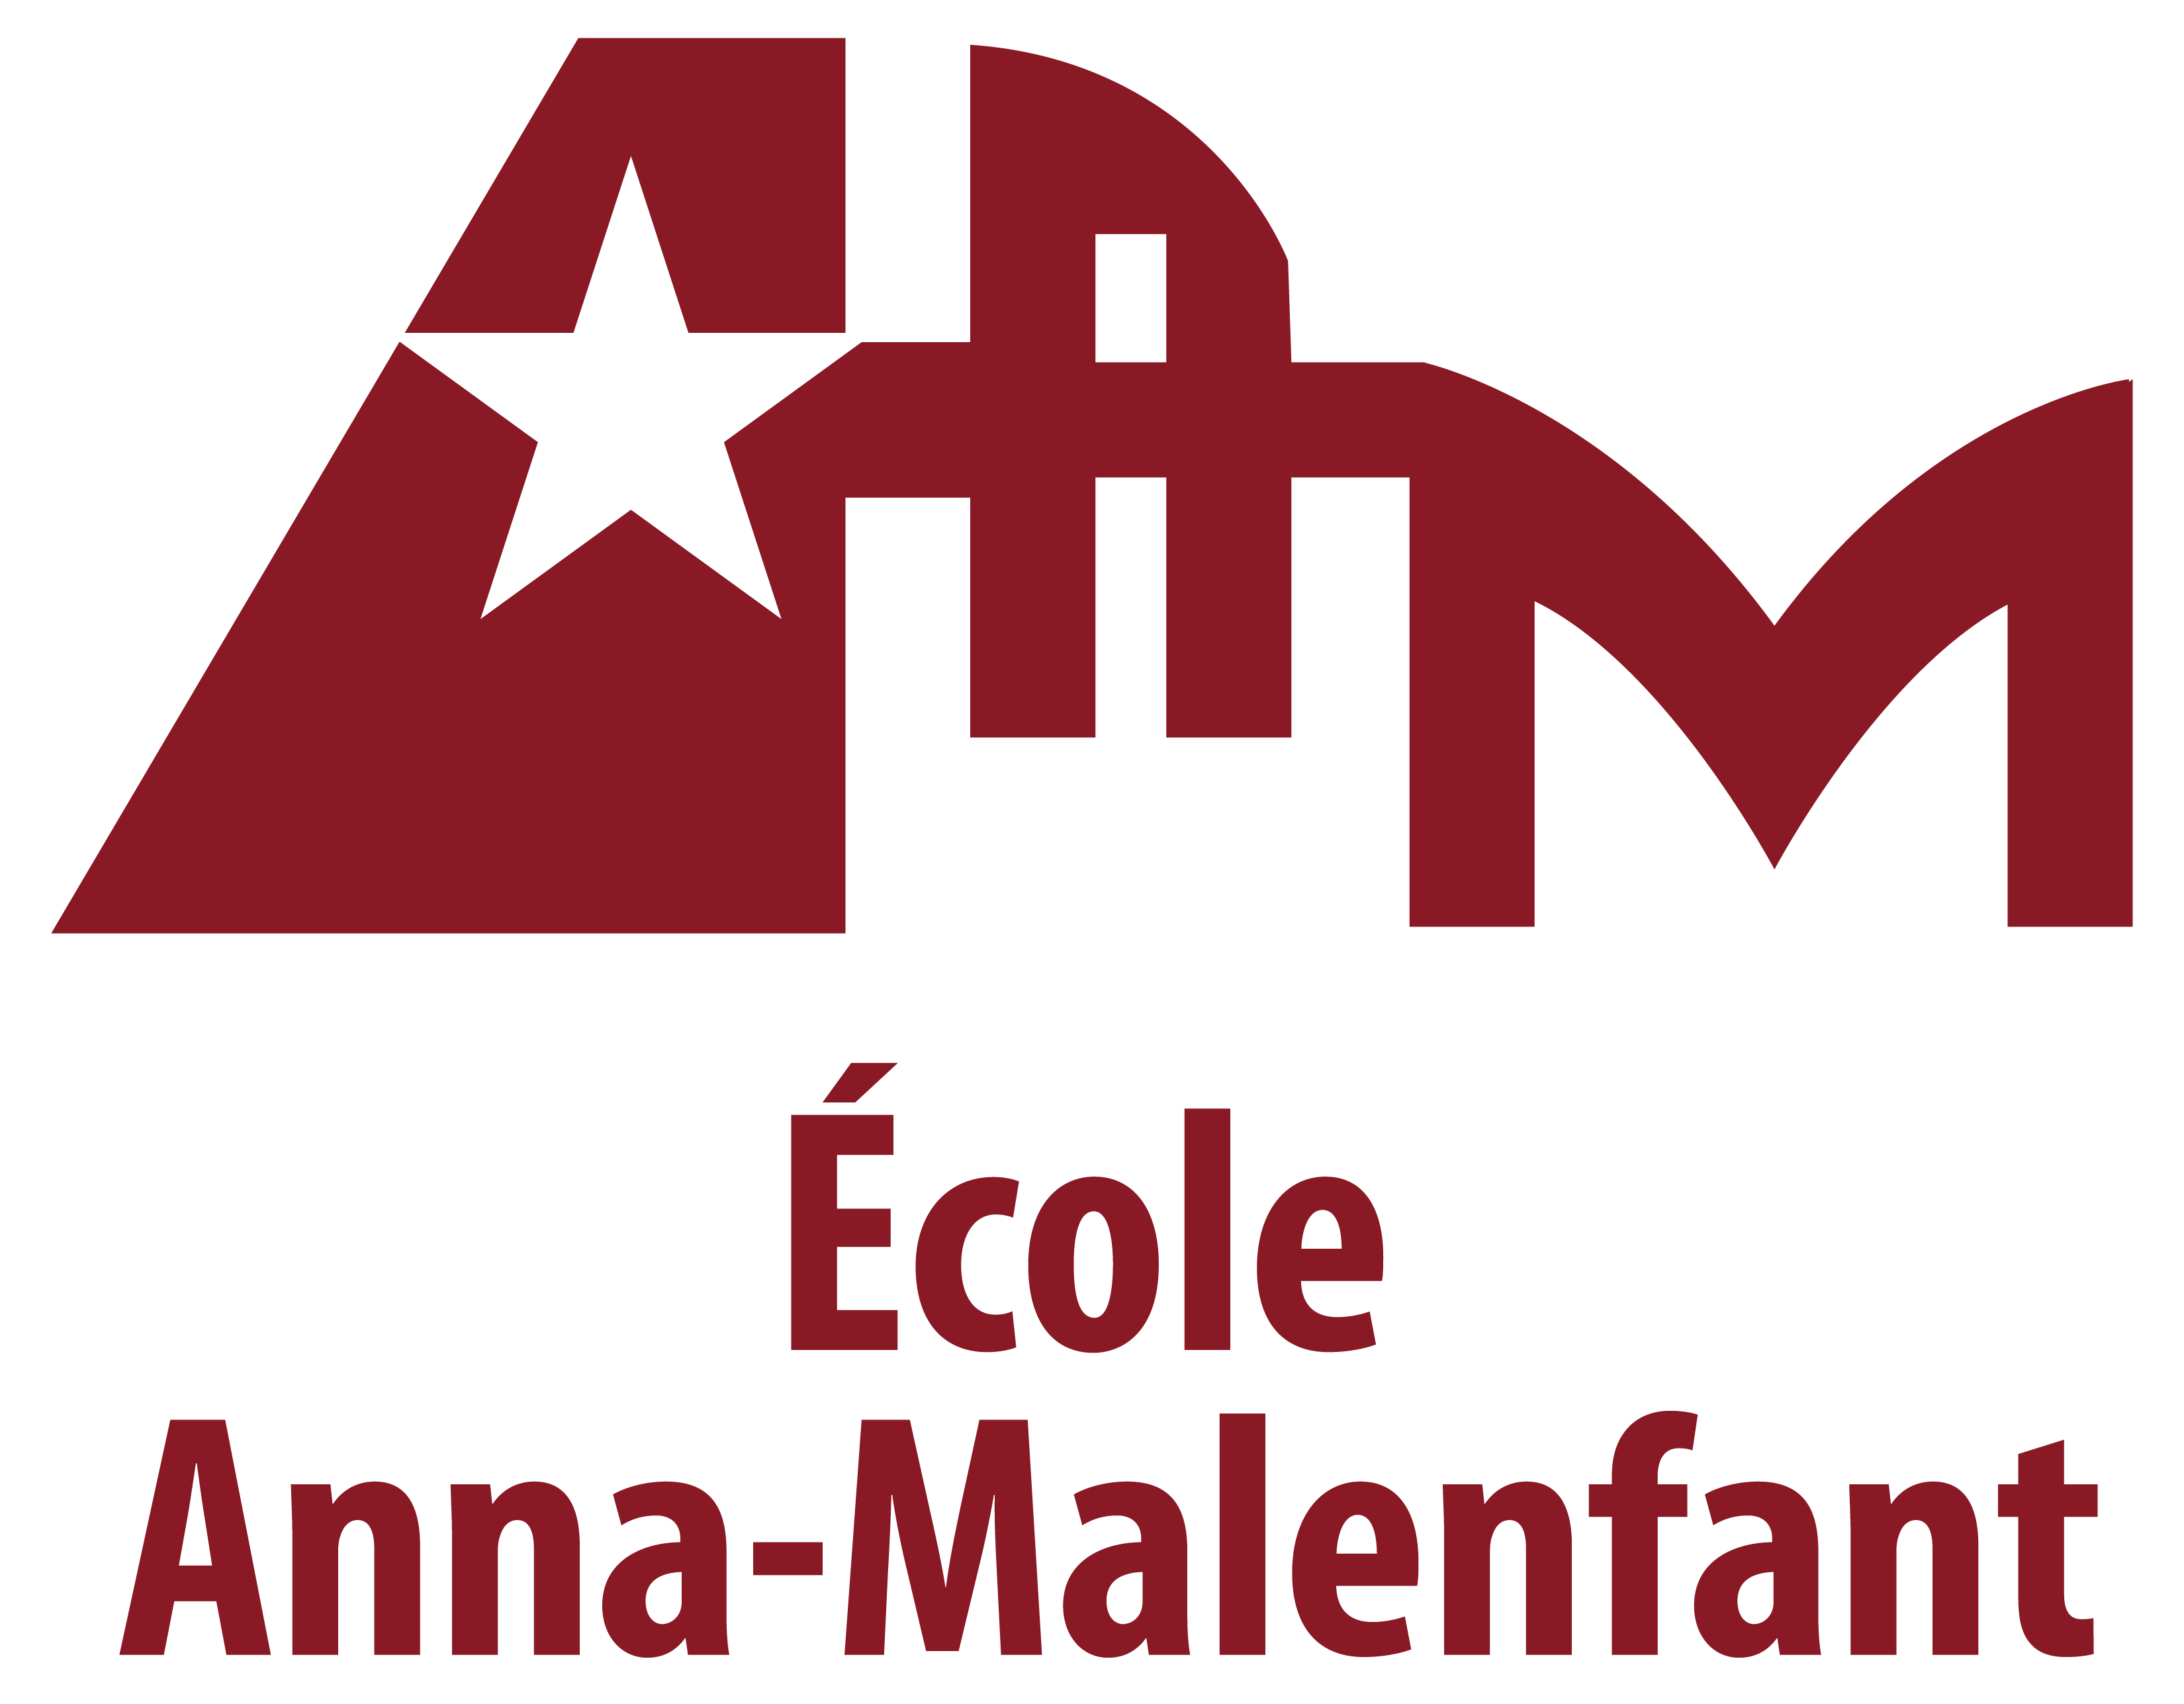 École Anna-Malenfant